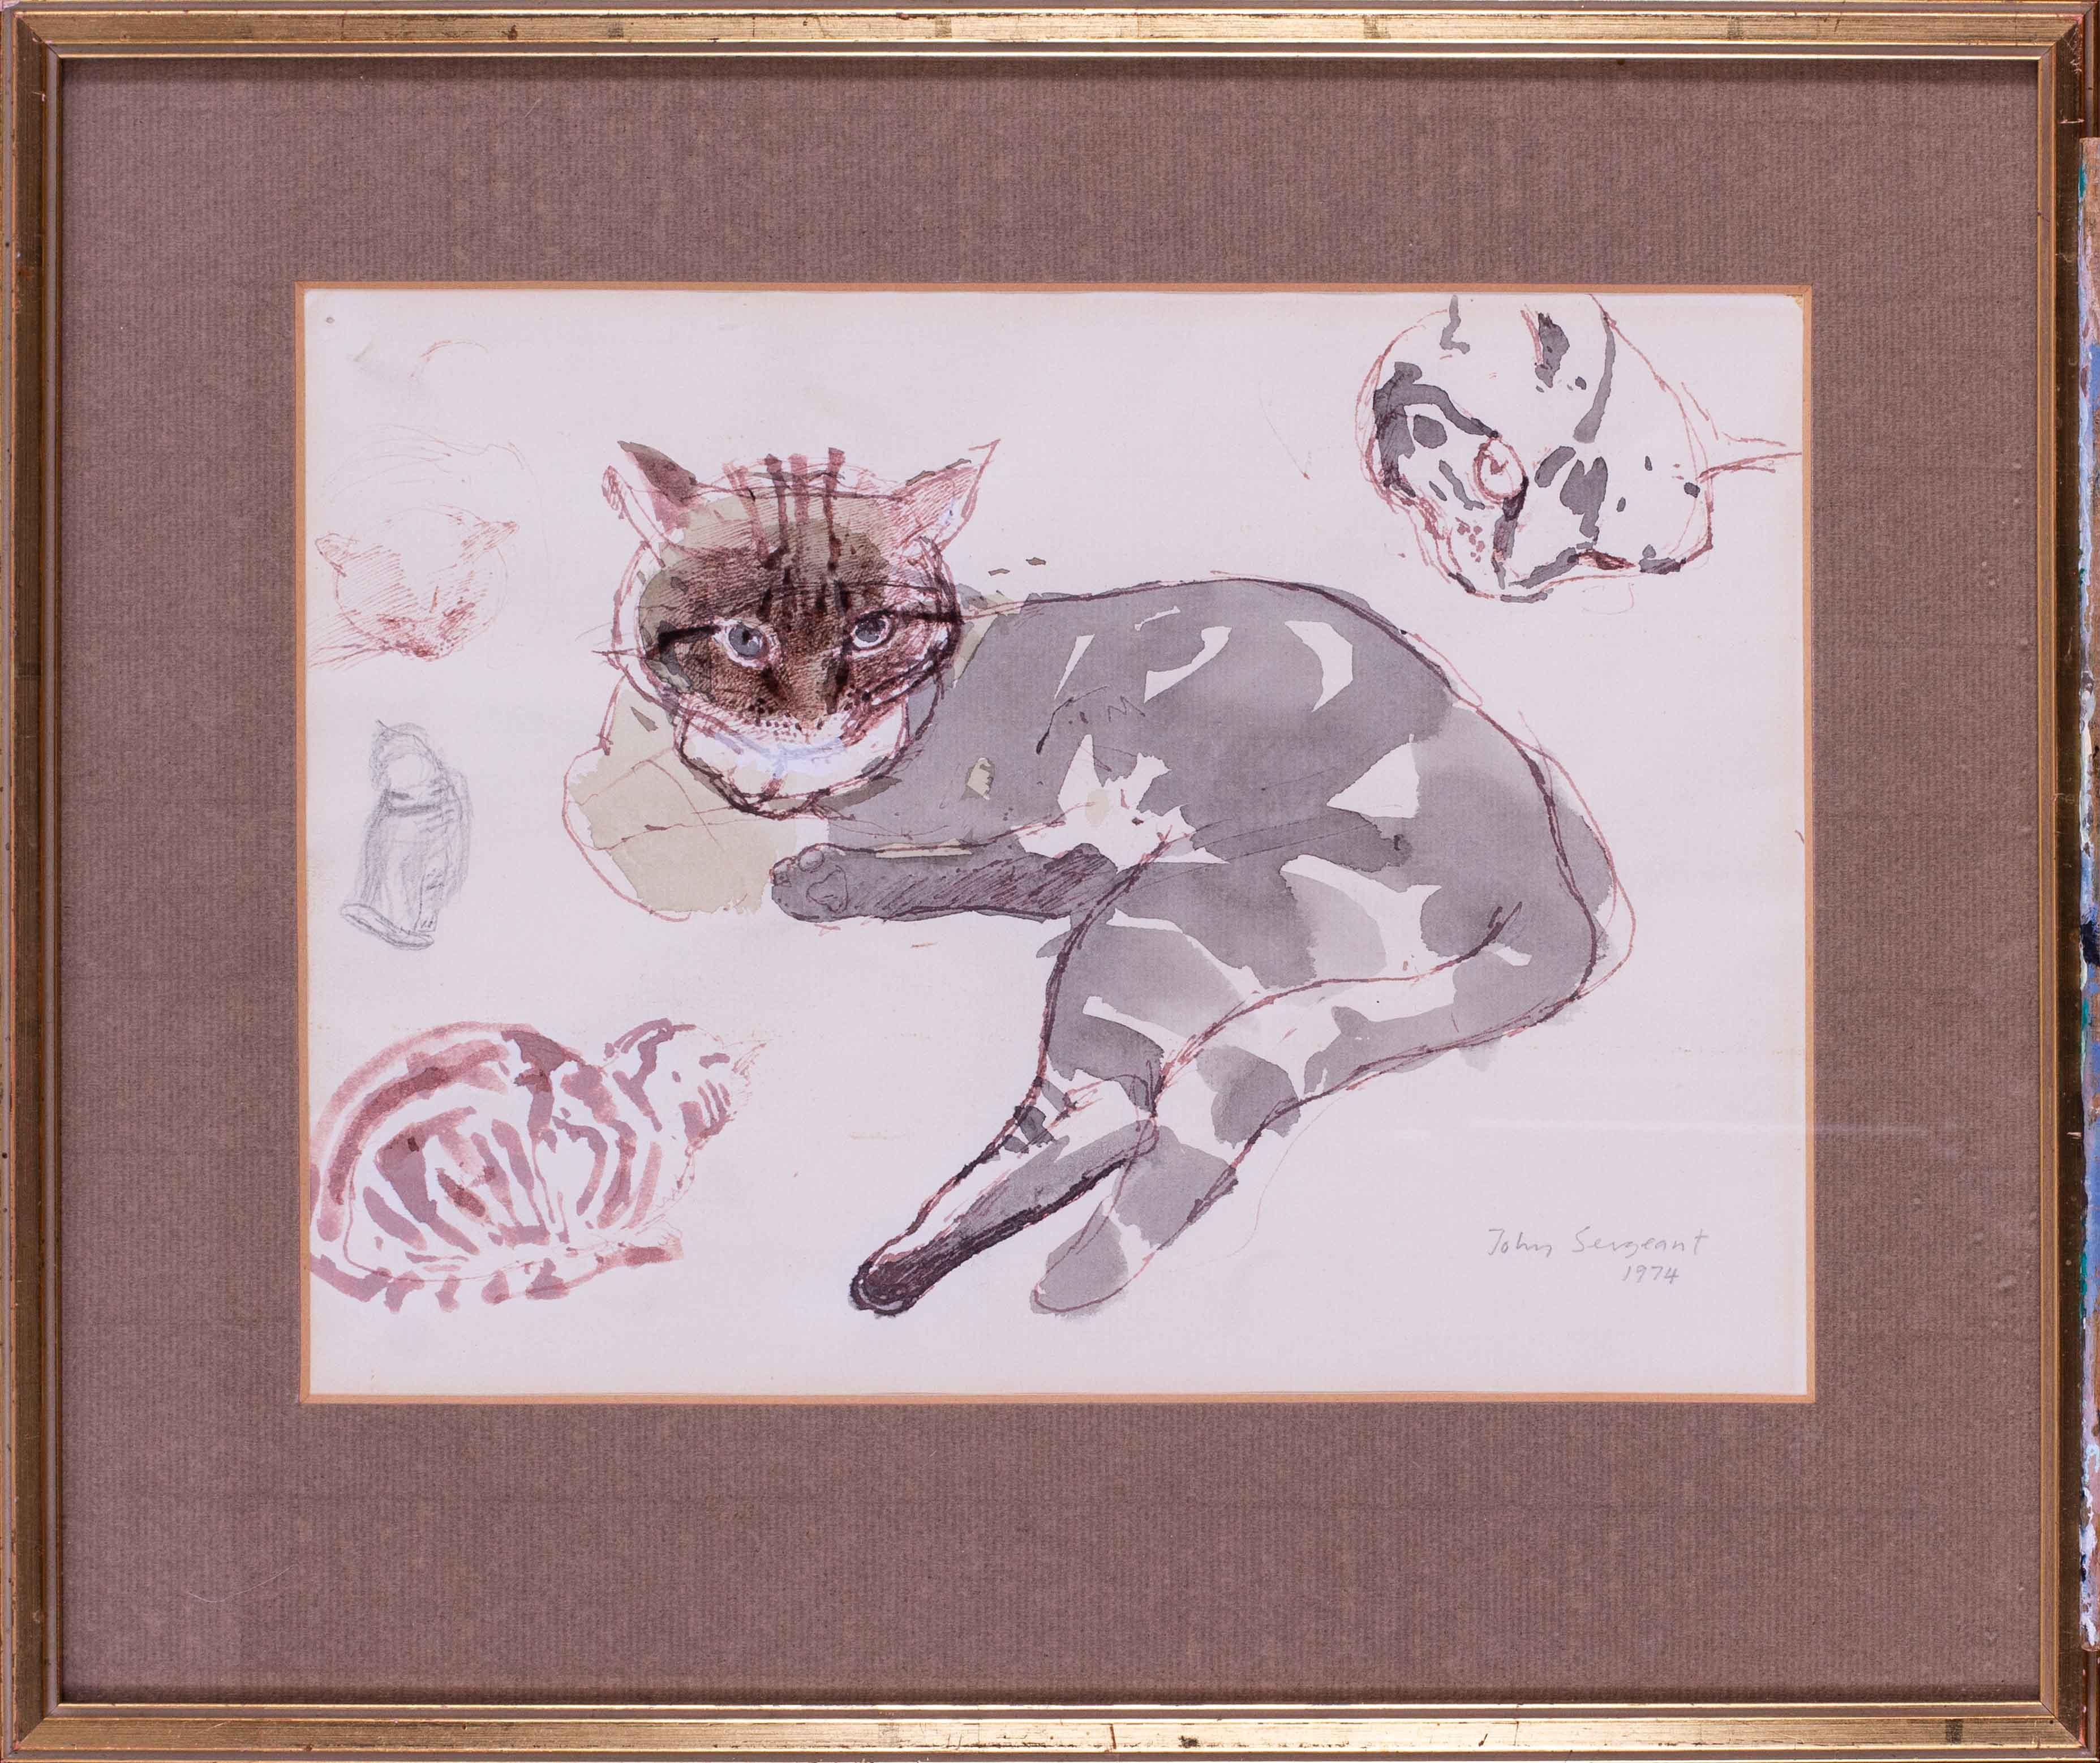 John Sargeant (Brite, 1937 - 2010)
Studien über eine getigerte Katze
Gemischte Medien
Signiert und datiert 'John Sargeant 1974 (unten rechts)
8.7/8 x 12in. (22.6 x 30.5 cm.)
